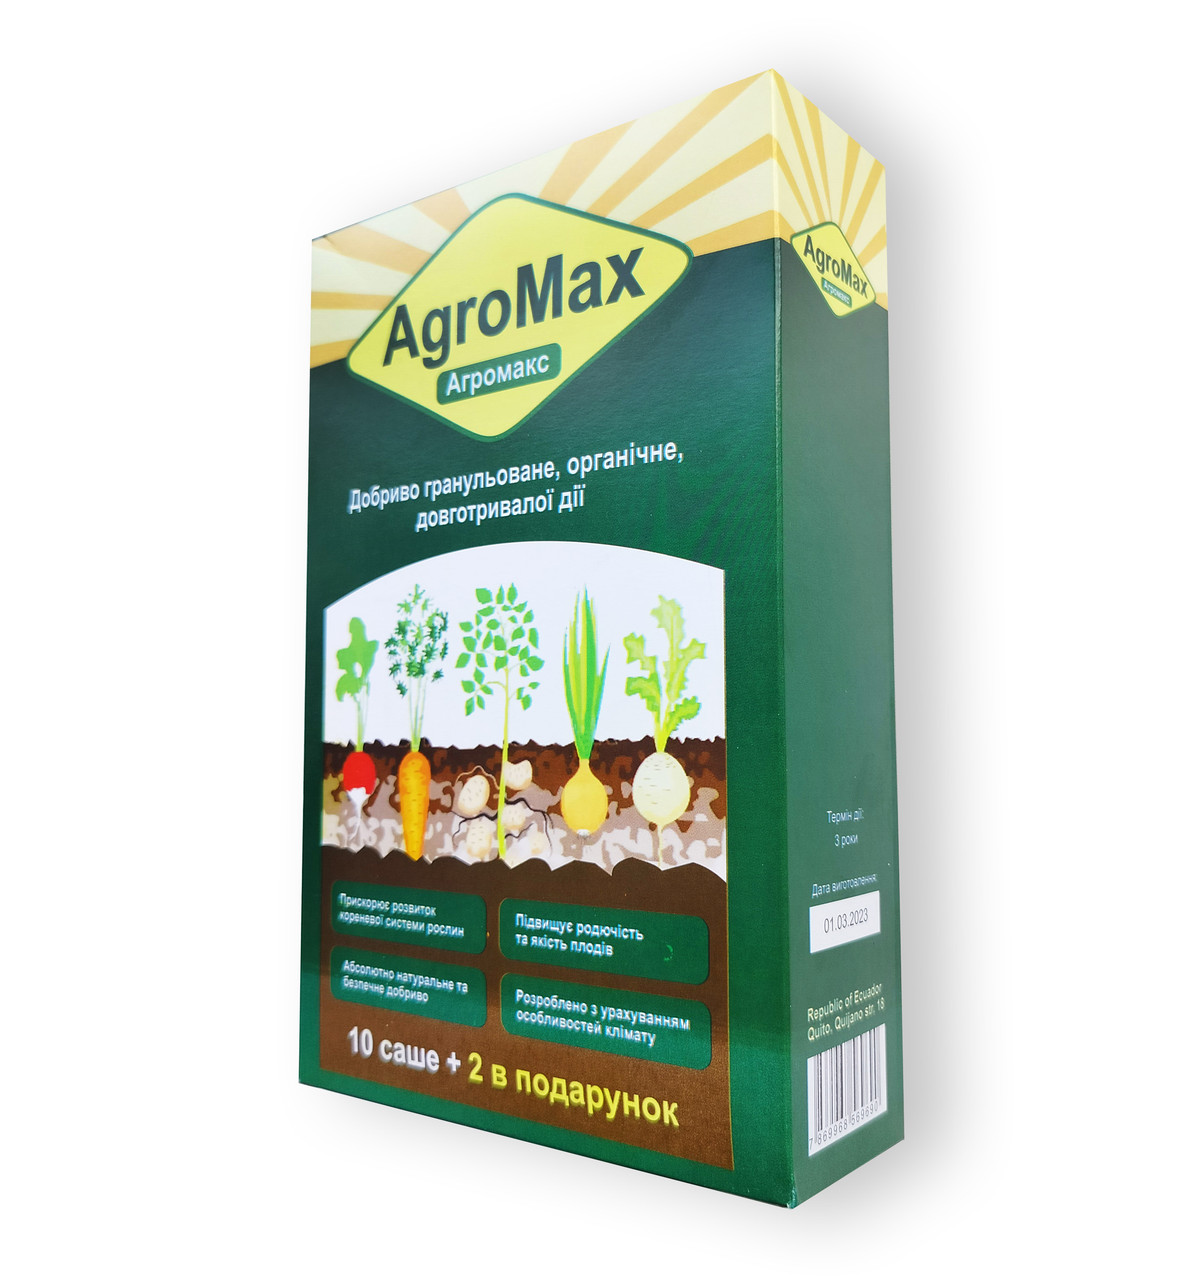 AGROMAX - Добриво в саше (АгроМакс)